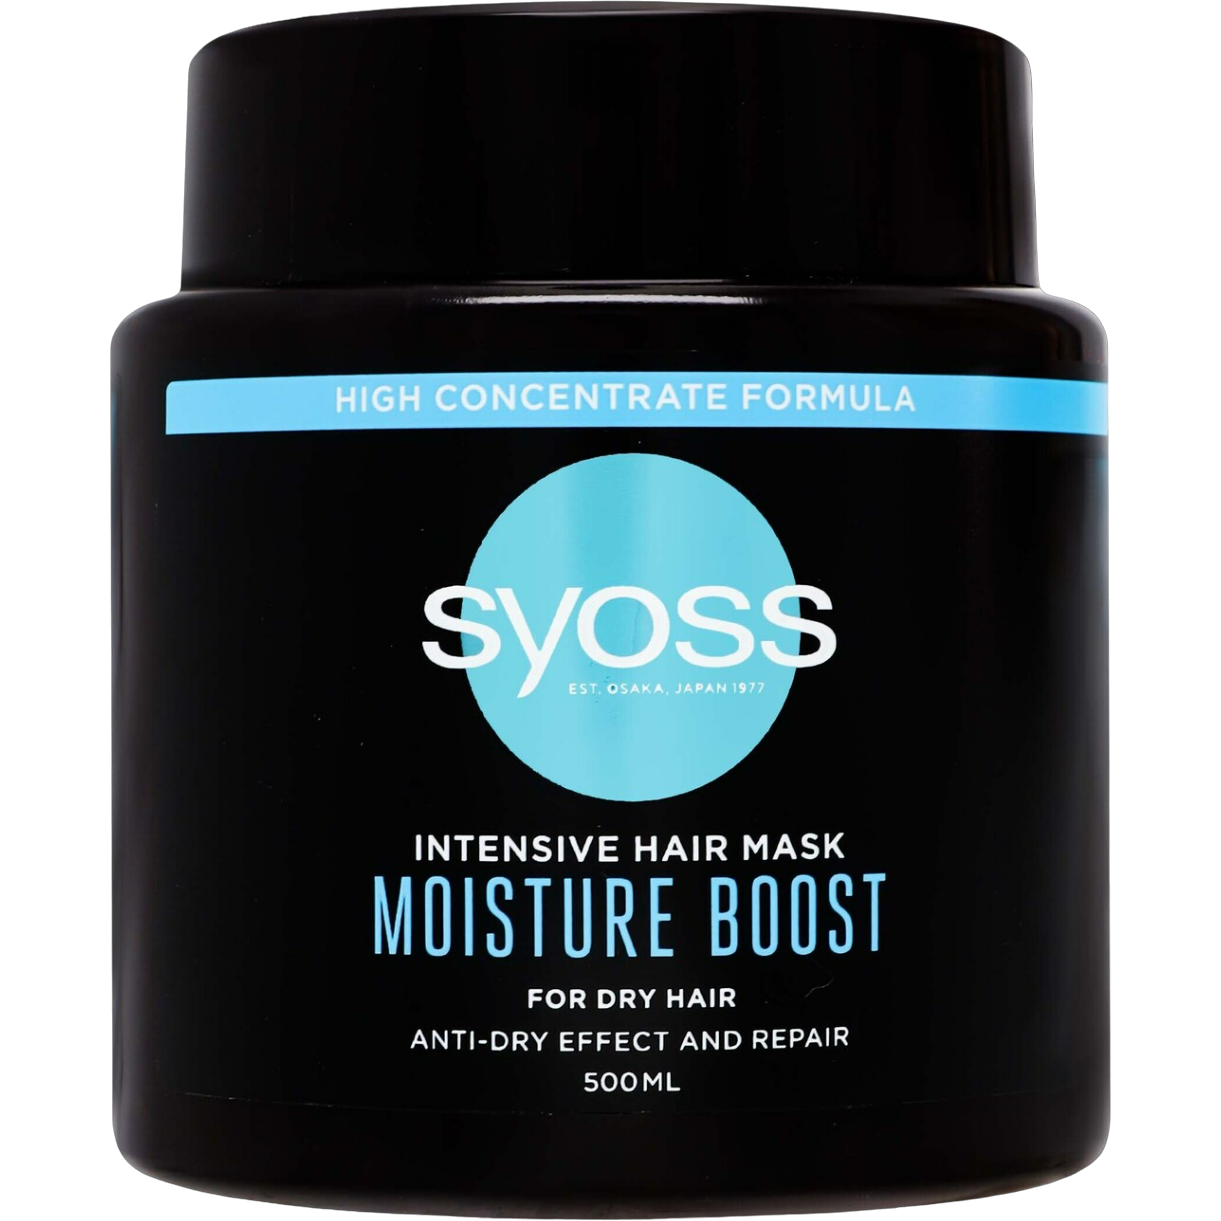 Інтенсивна маска для сухого волосся Syoss Moisture Boost, 500 мл - фото 1